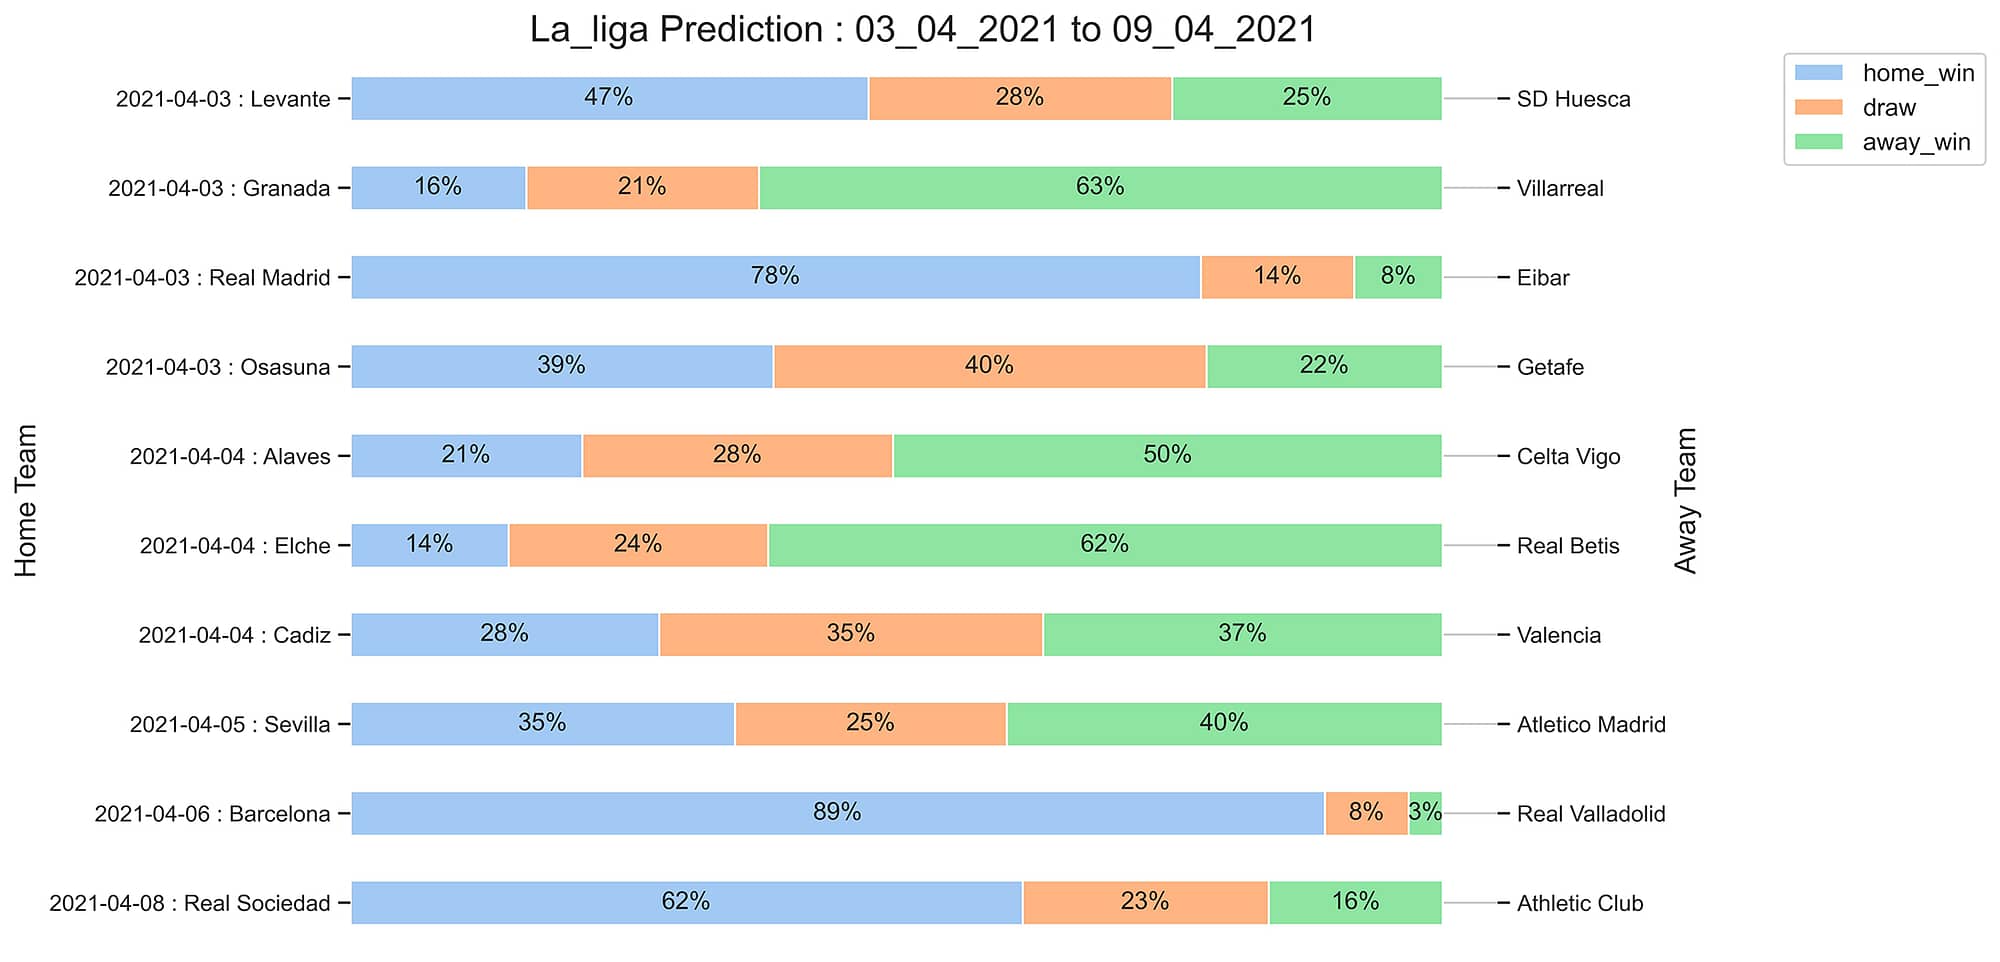 La_liga_Prediction 03_04_2021